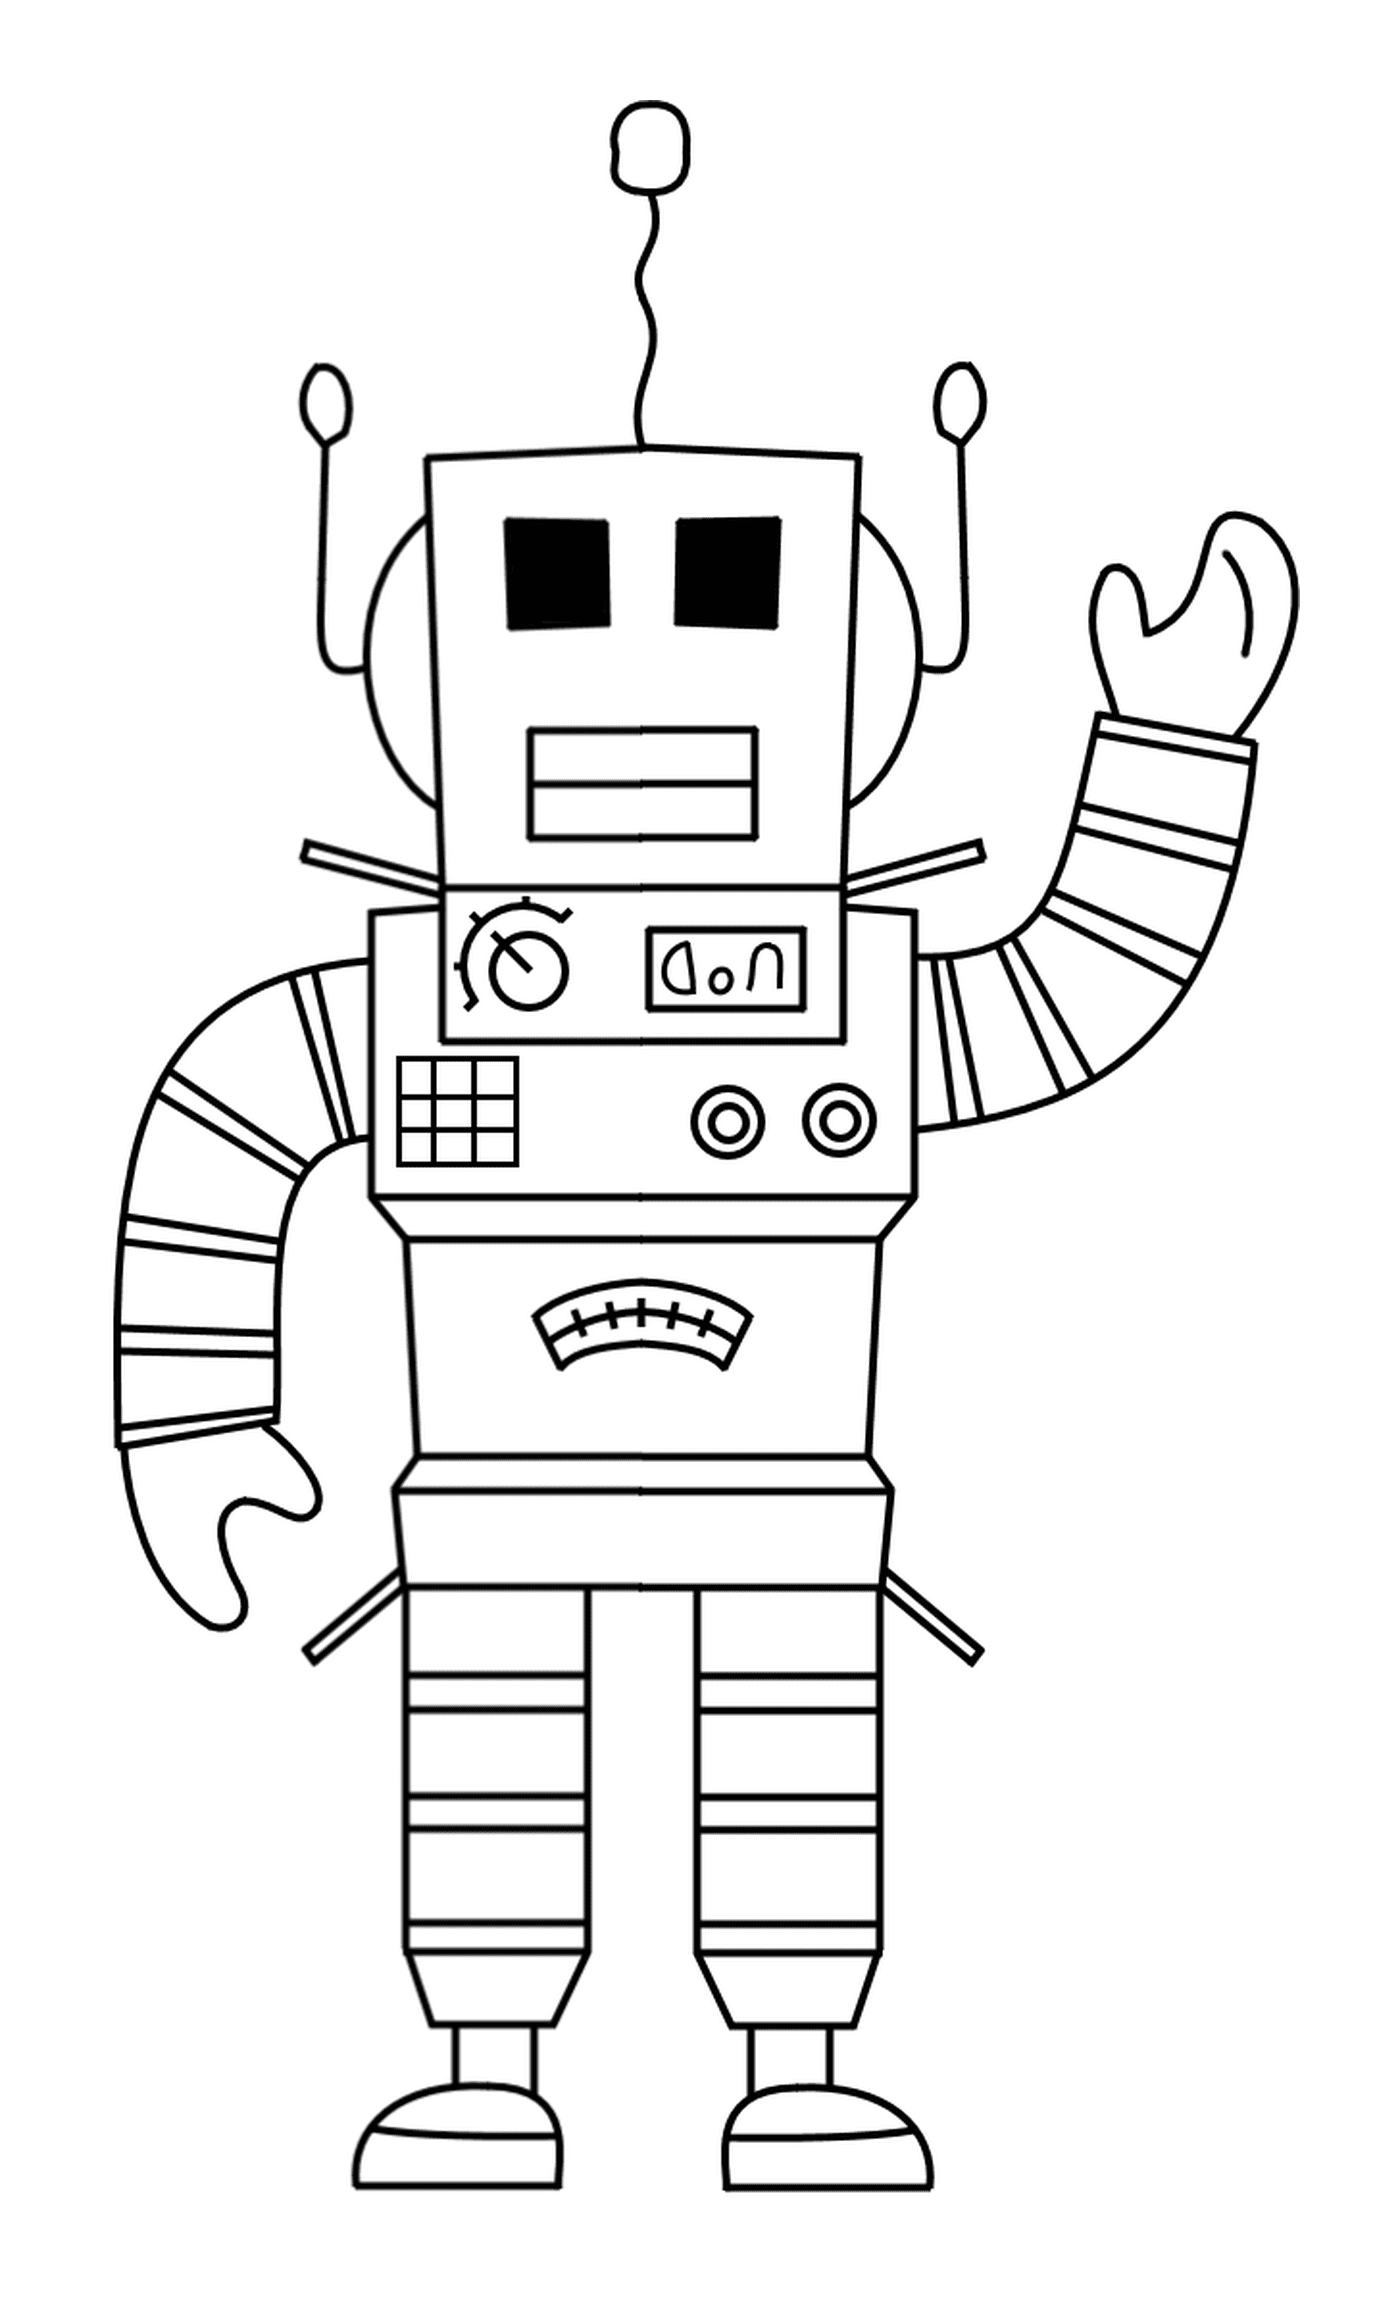  Robot Roblox que saluda 